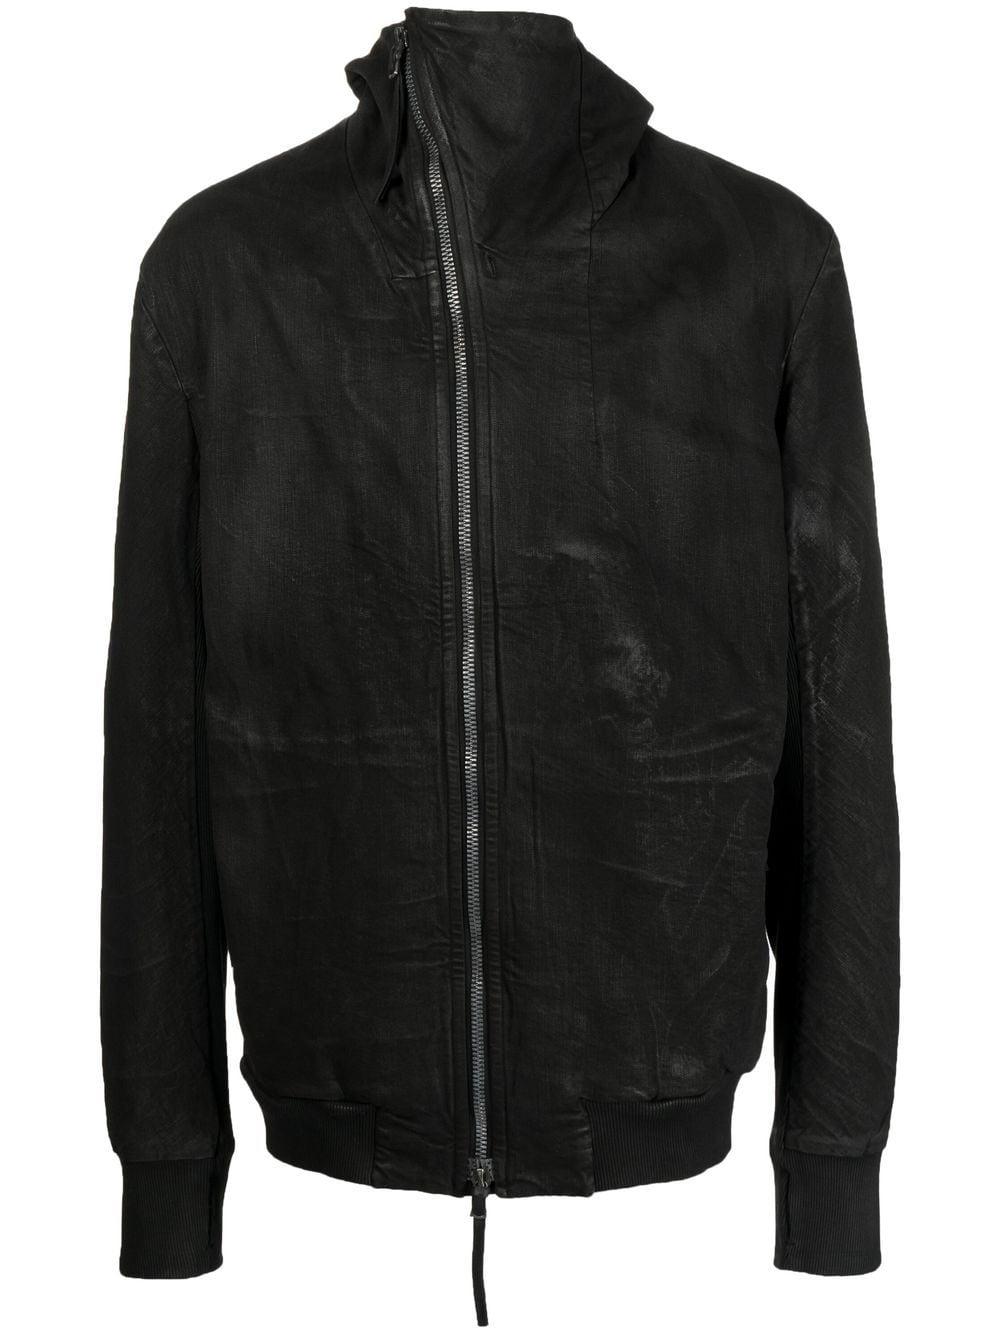 Boris Bidjan Saberi Cotton Textured Hooded Jacket in Black for Men ...